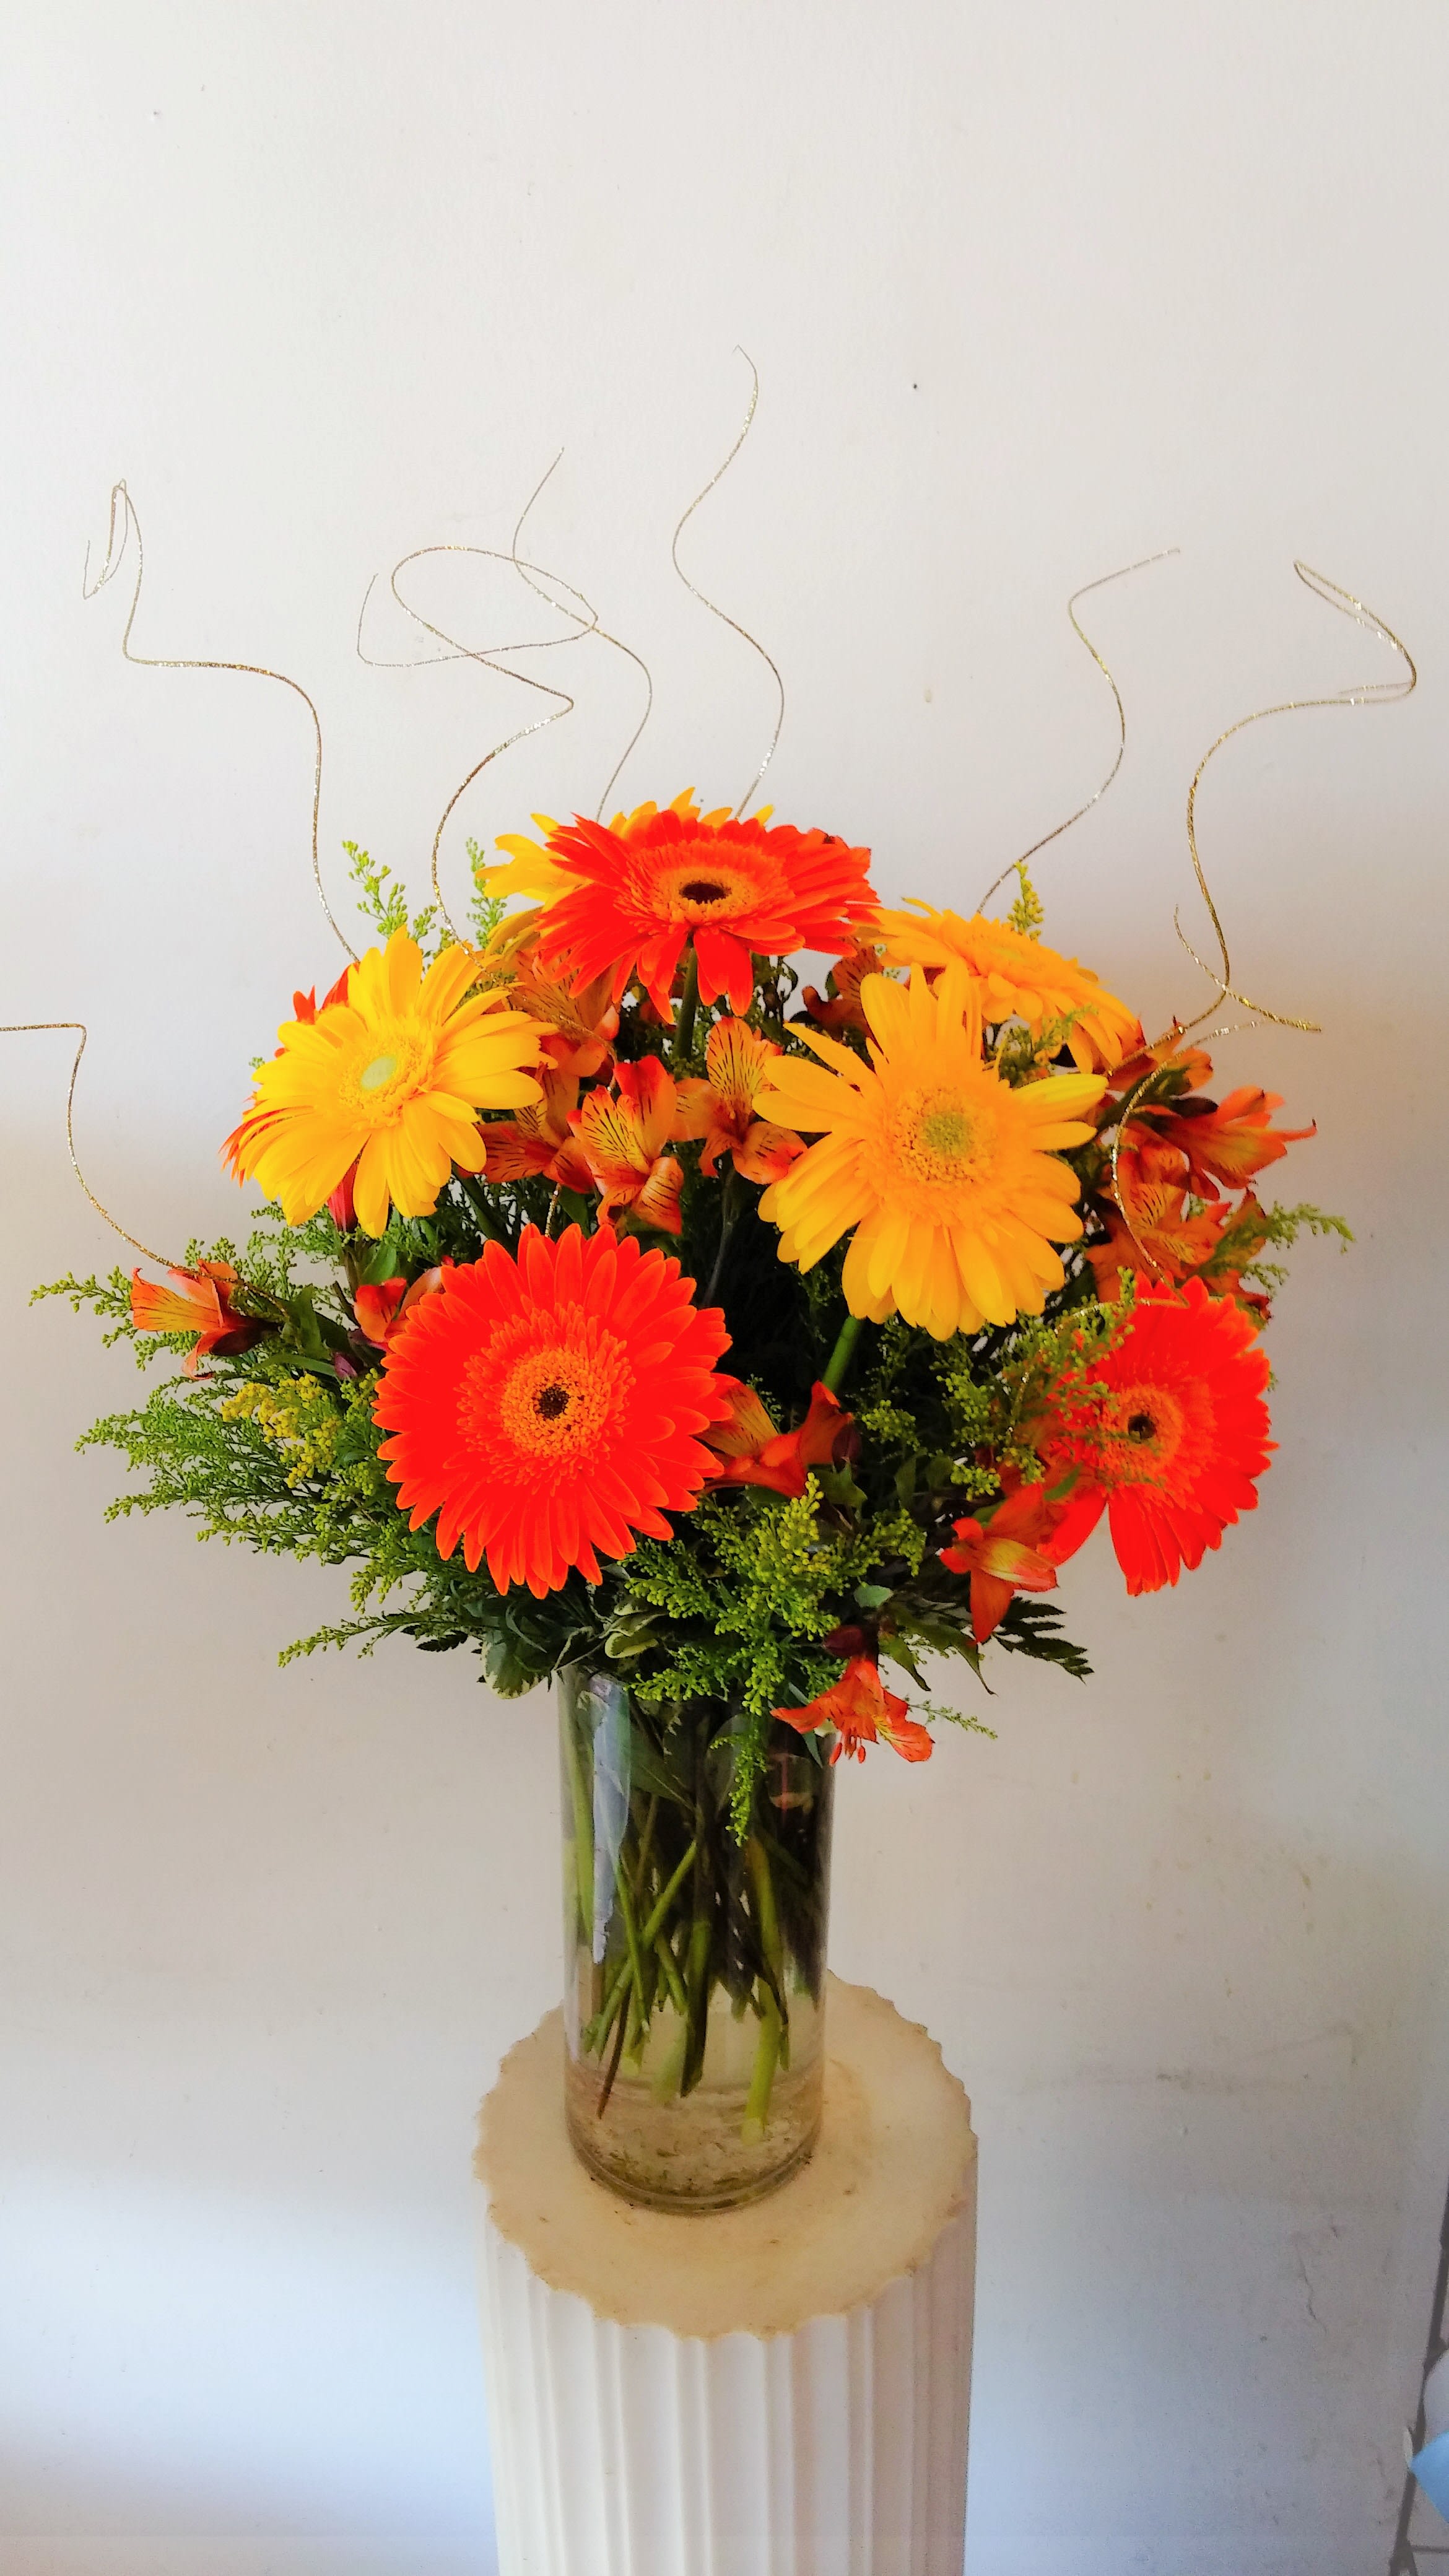 Sunshine - Cheerful arrangement of gerbera daisies.